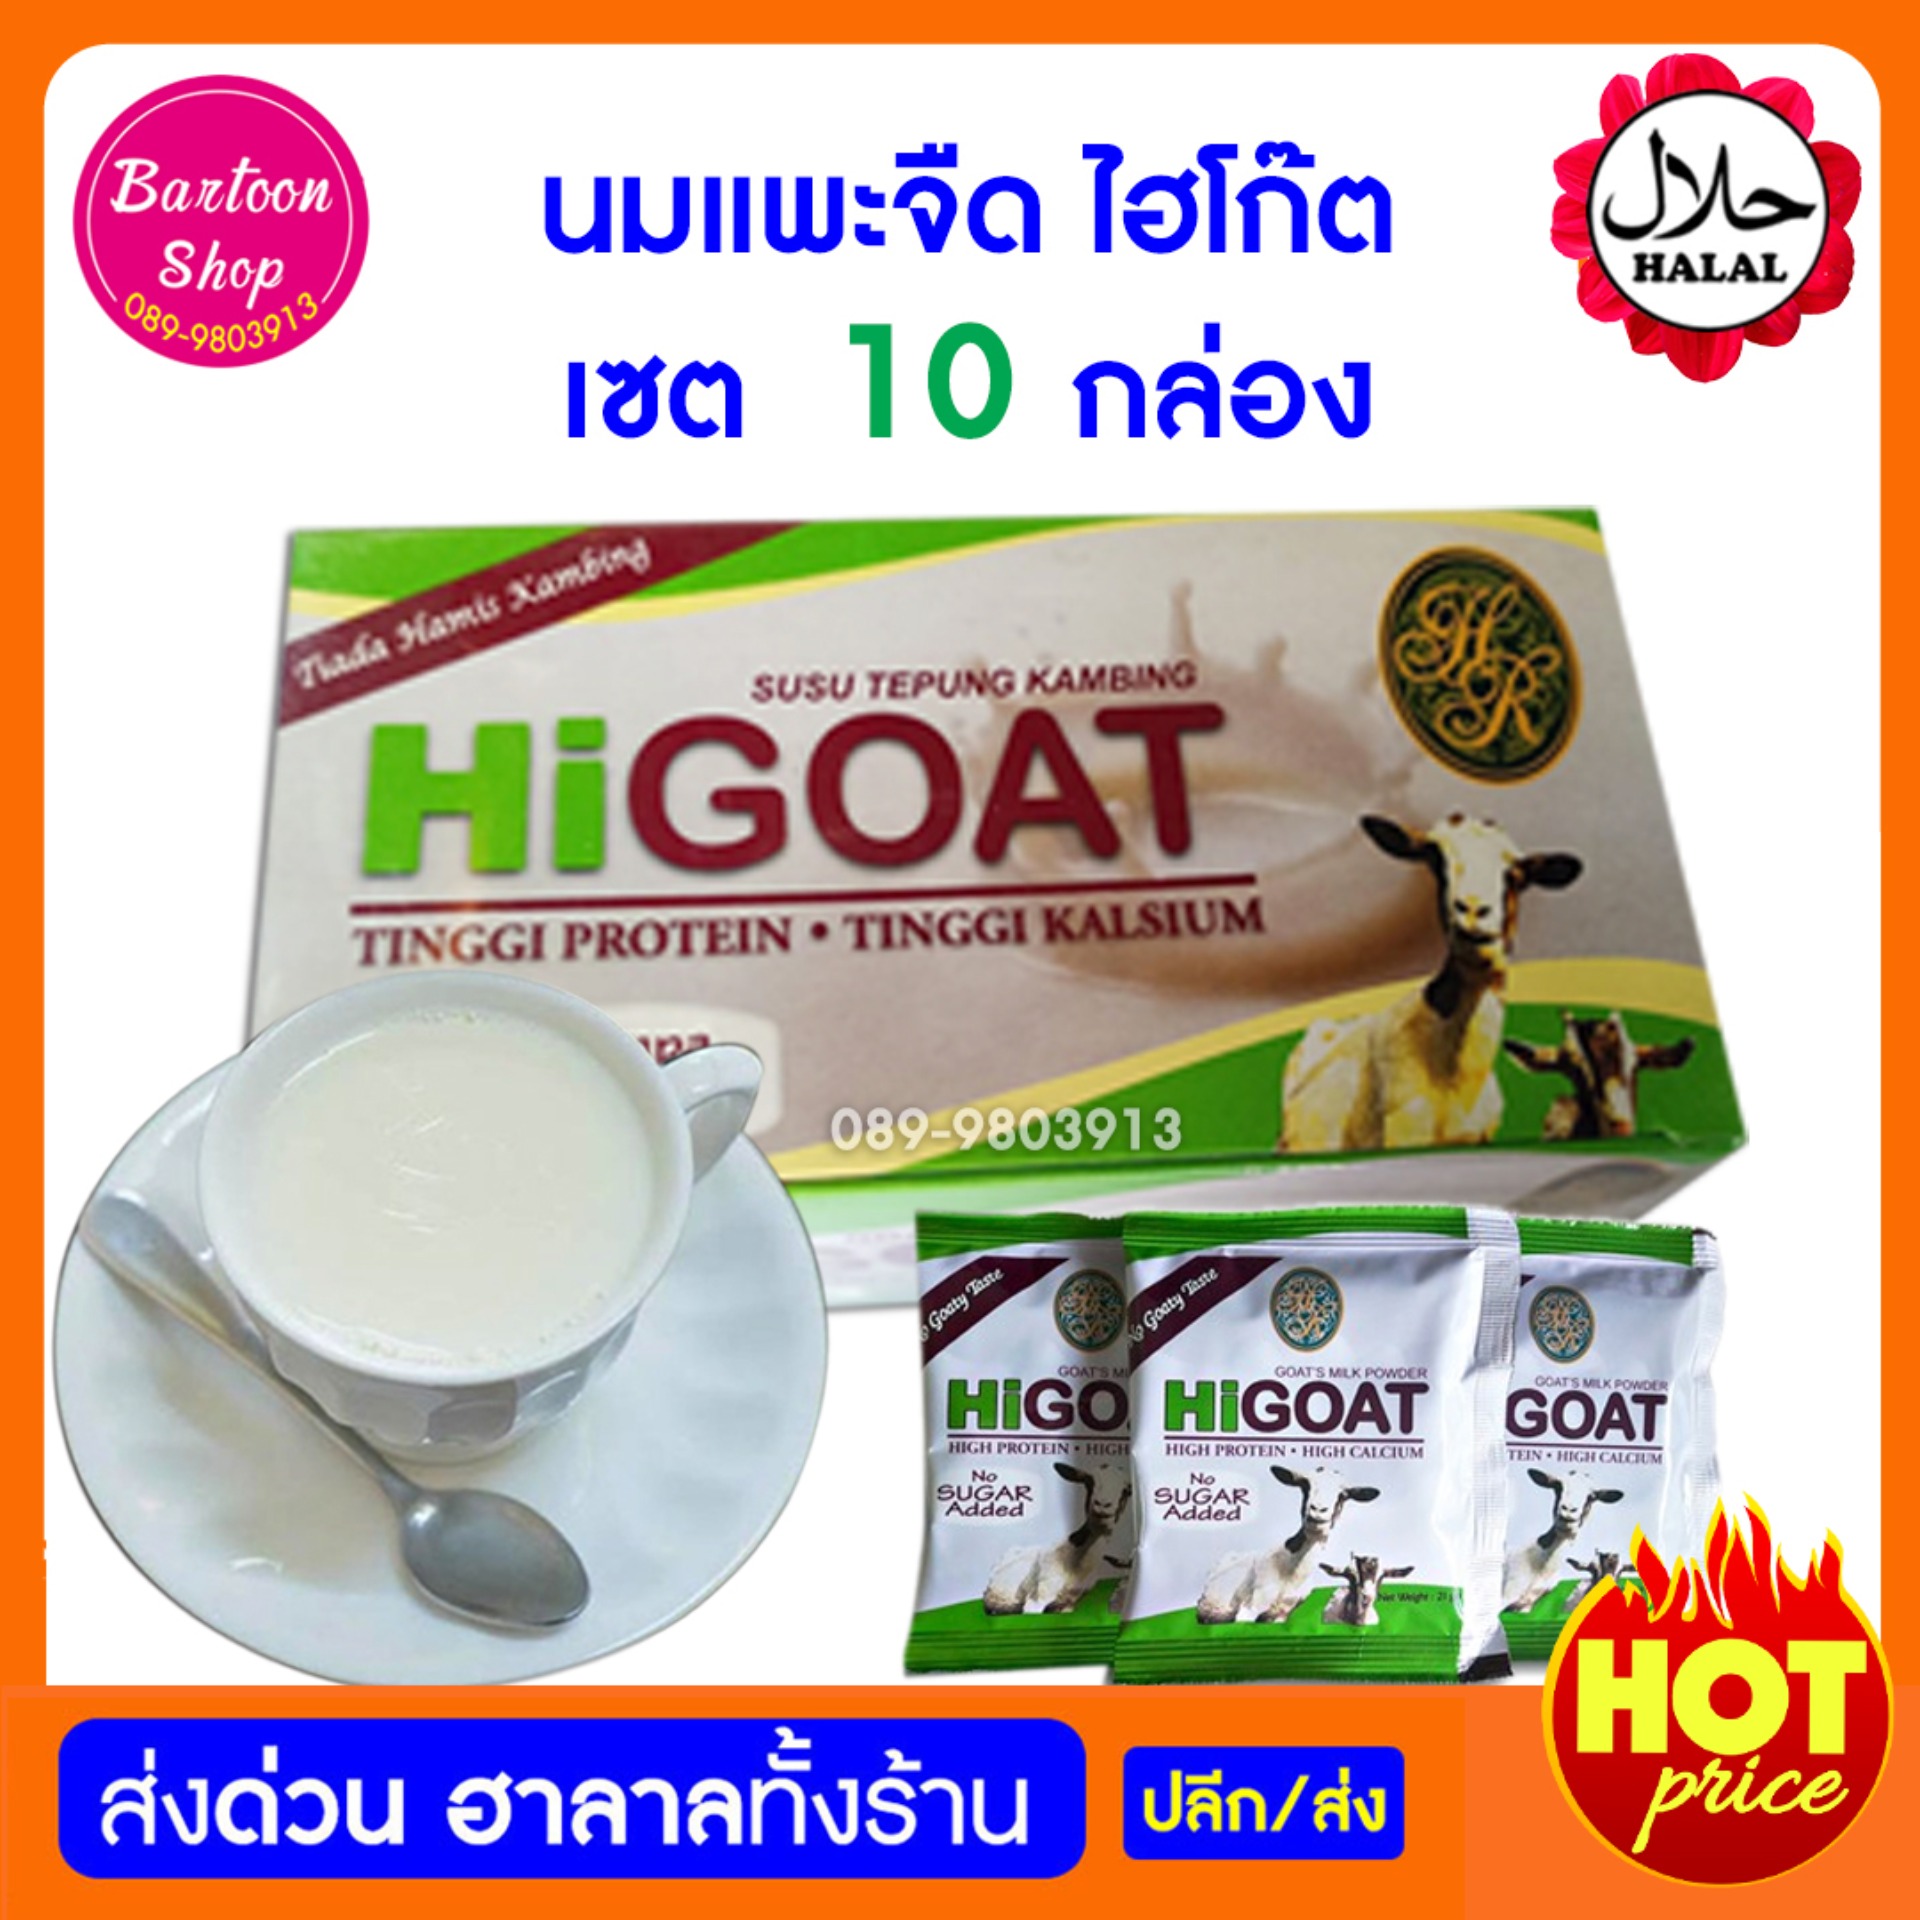 นมแพะ รสจืด ตรา HiGOAT (มี 15 ซองเล็ก)* 10 กล่อง ราคาส่ง ชนิดซองชง แบบกล่อง